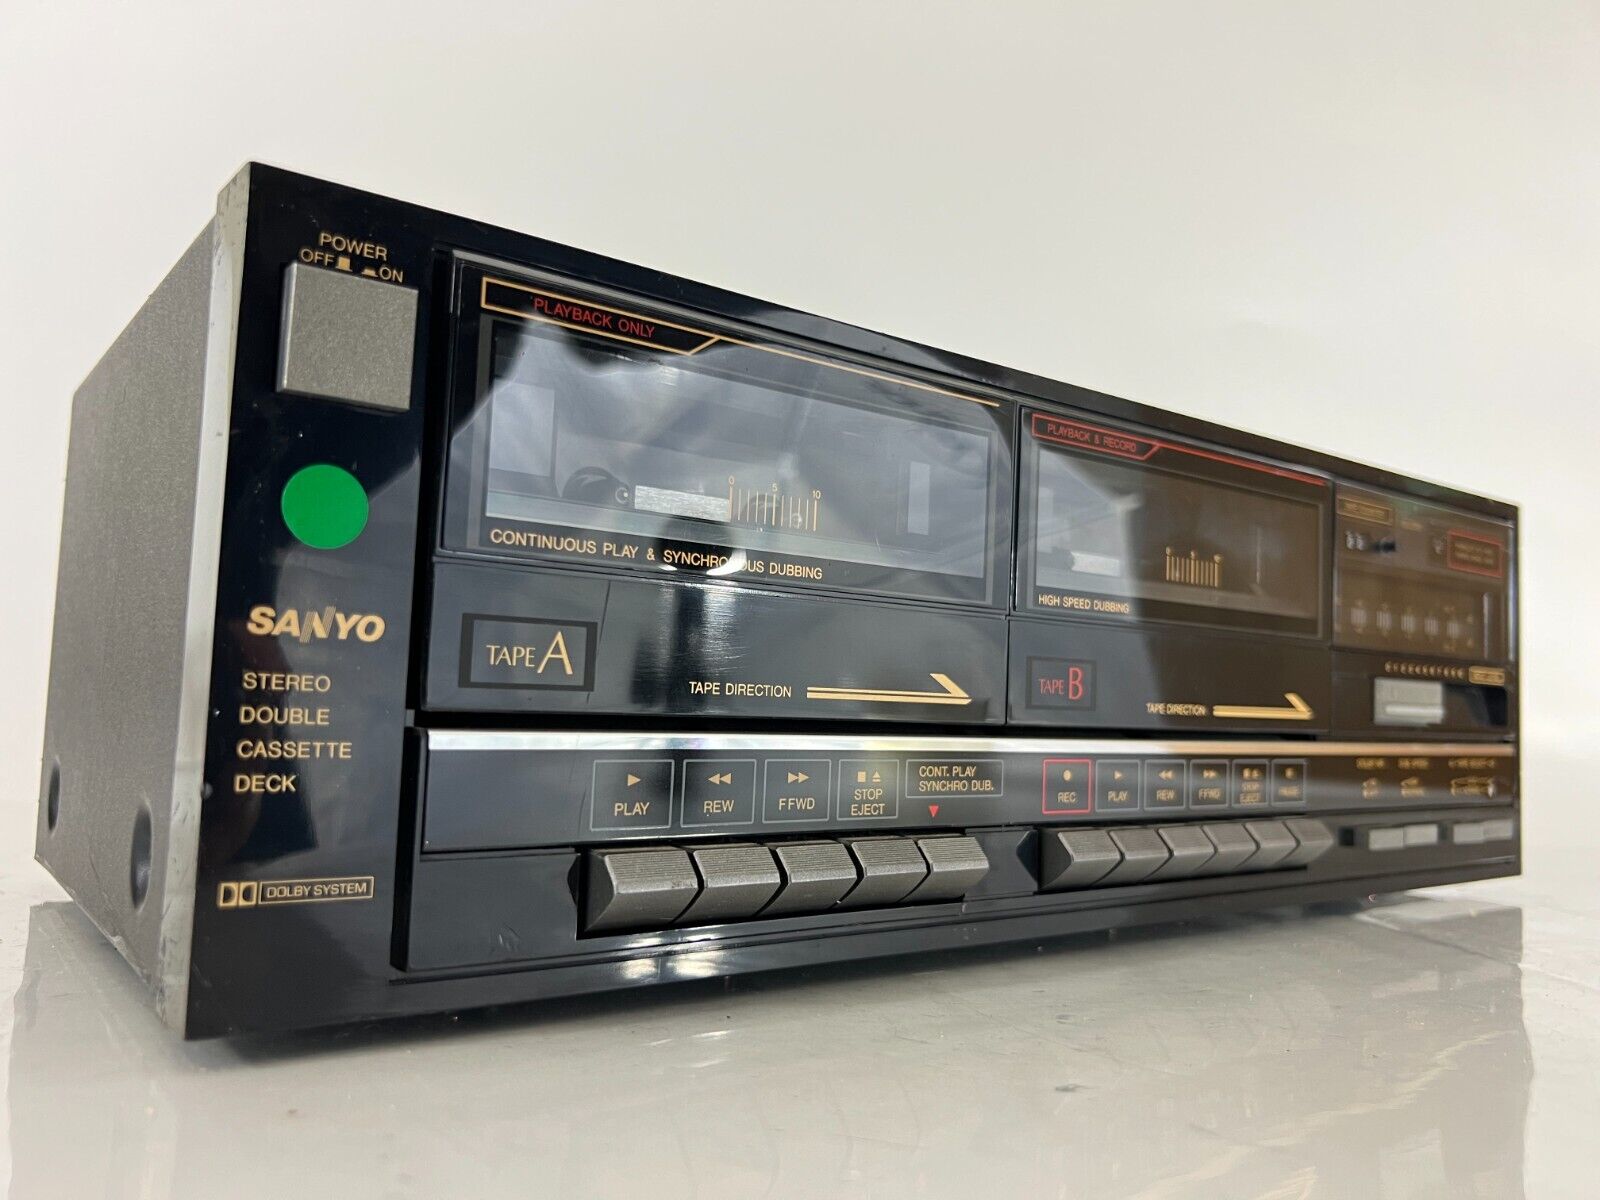 Двухкассетный магнитофон Sanyo RD-W690 с поддержкой технологии Dolby Stereo Audio-Япония-1987-год